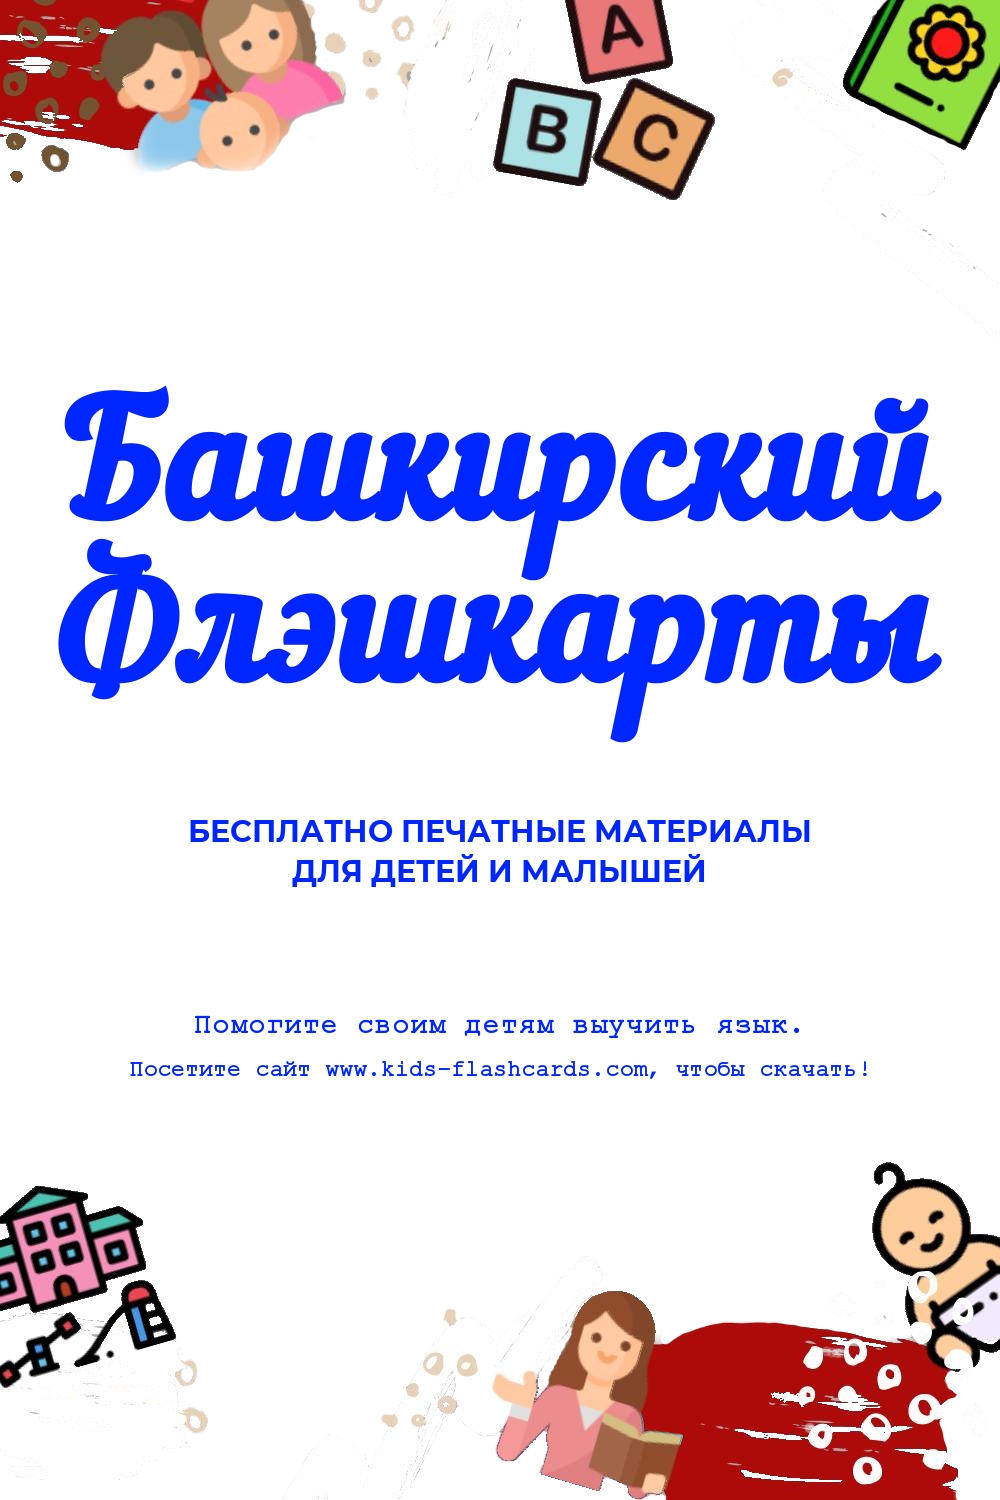 Башкирский язык - распечатки для детей